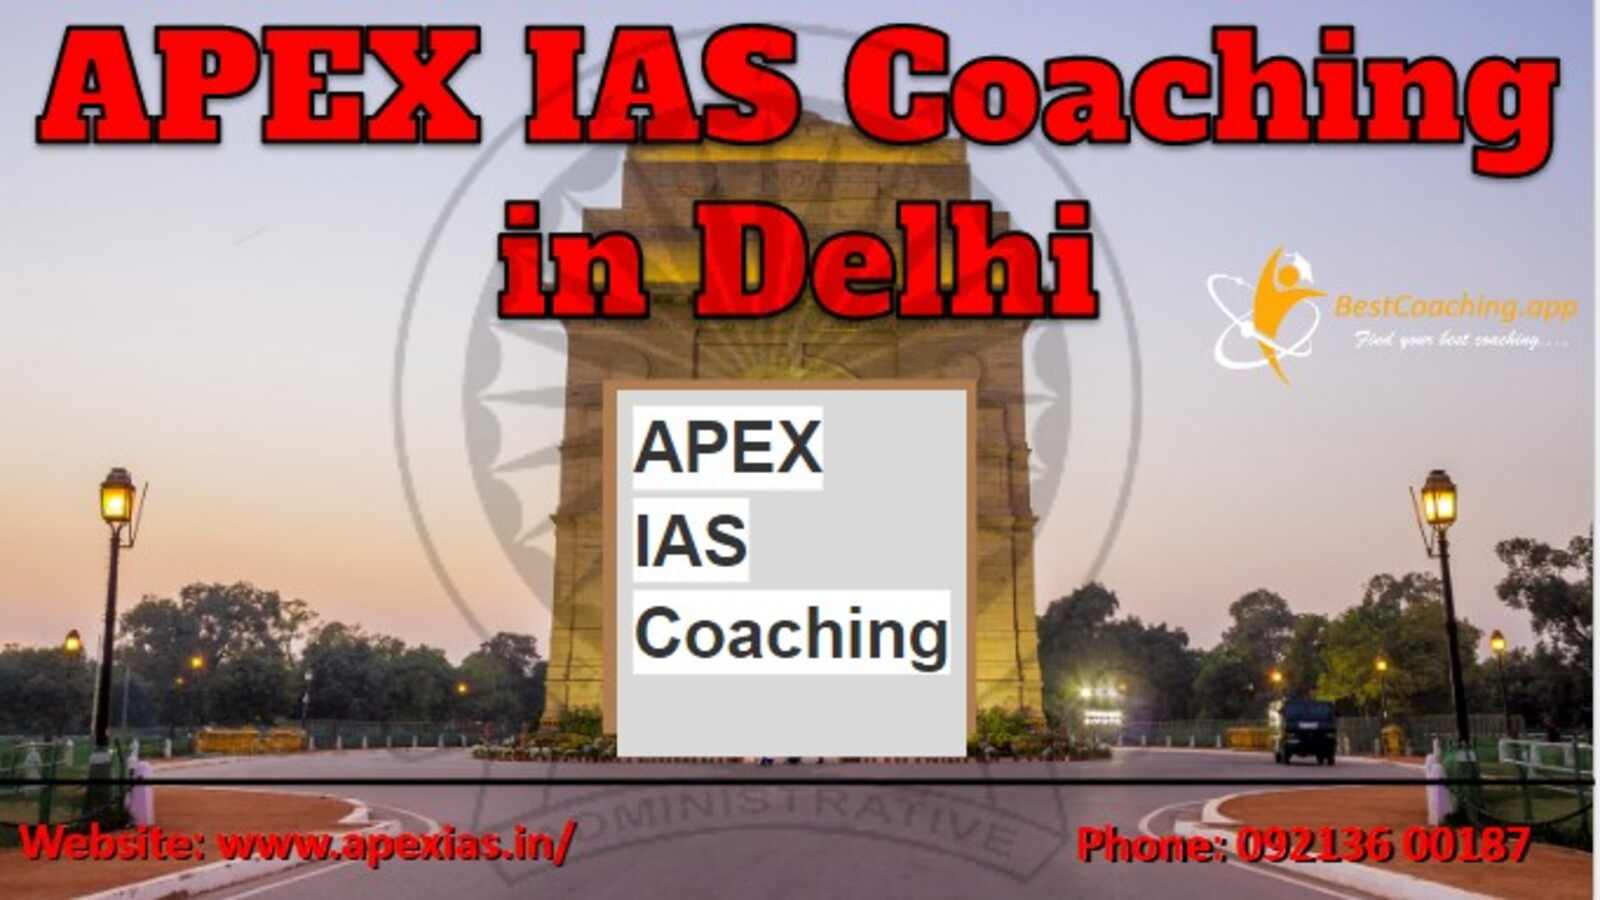 APEX IAS Coaching in Delhi